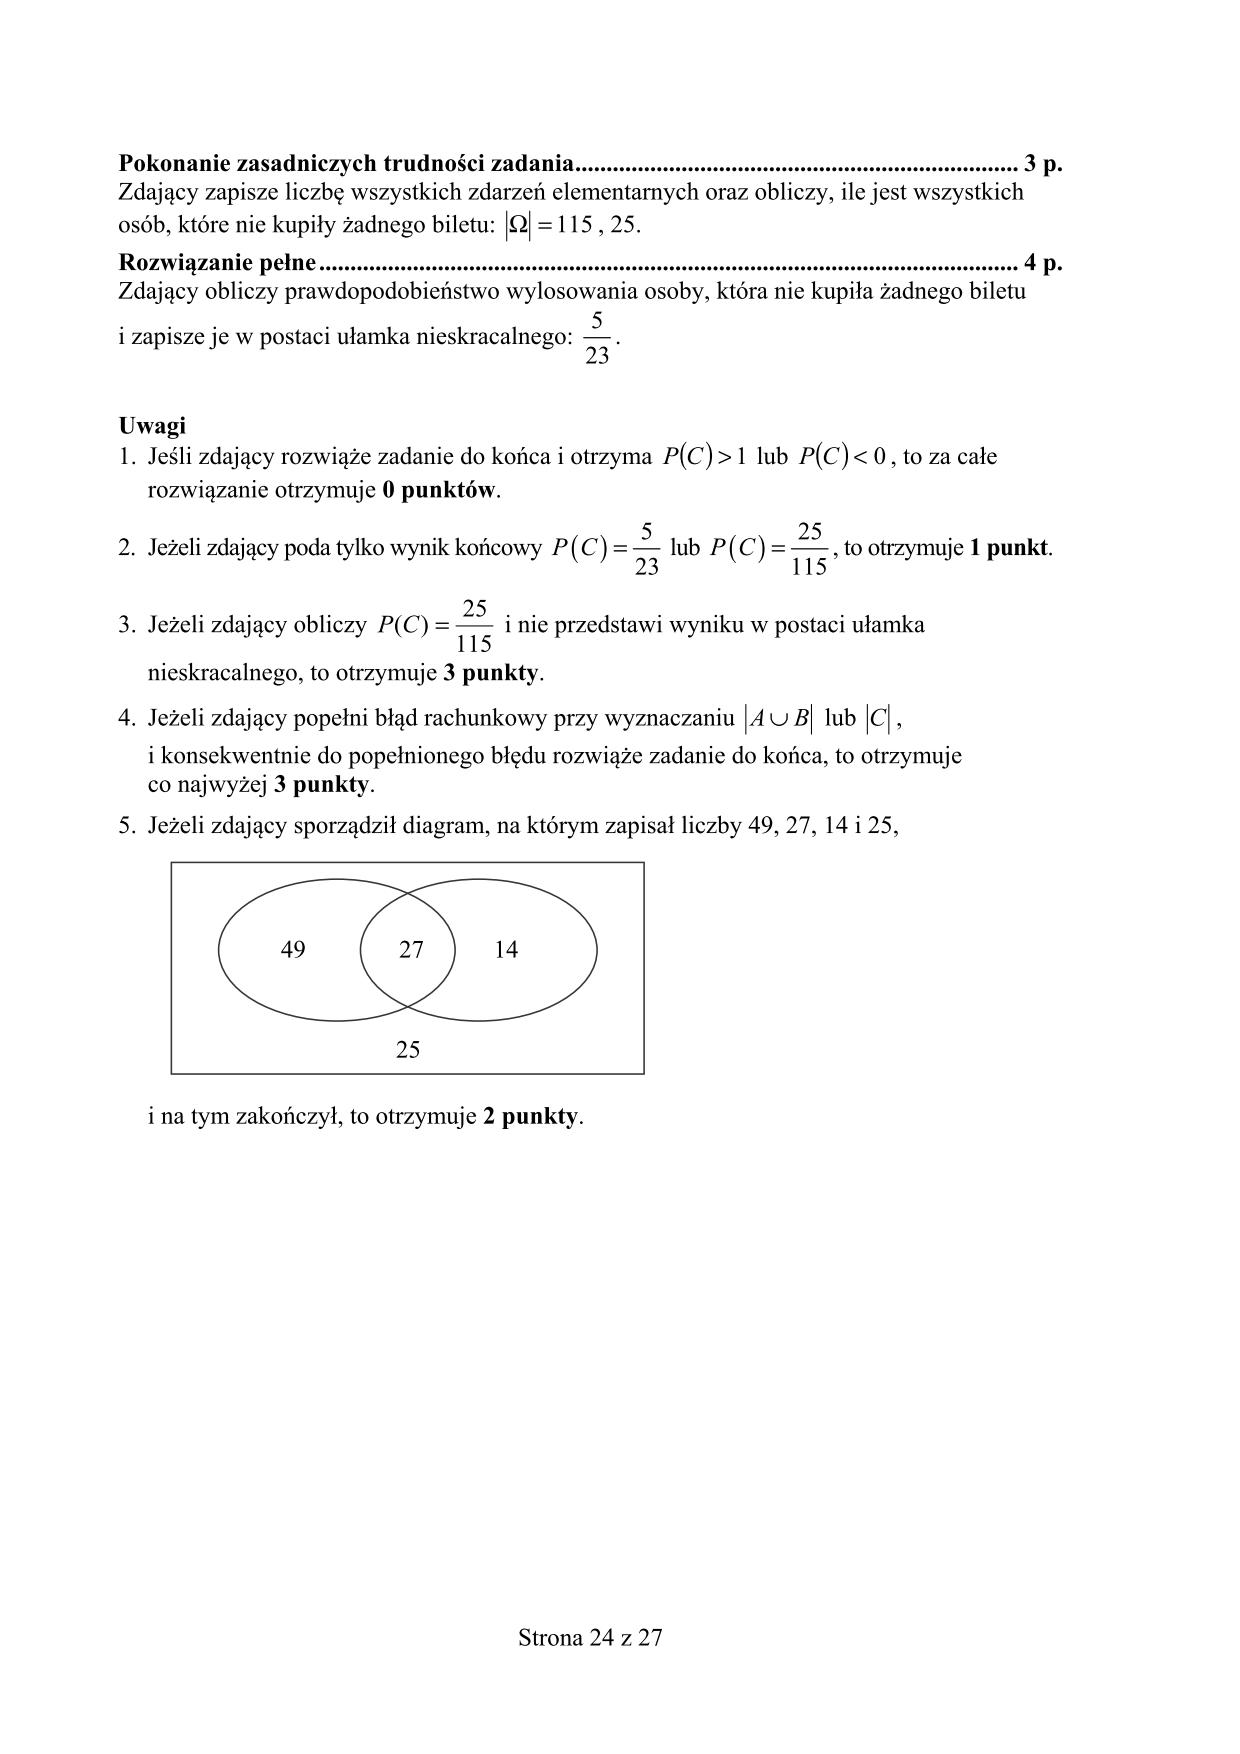 odpowiedzi-matematyka-poziom-podstawowy-matura-2015-24